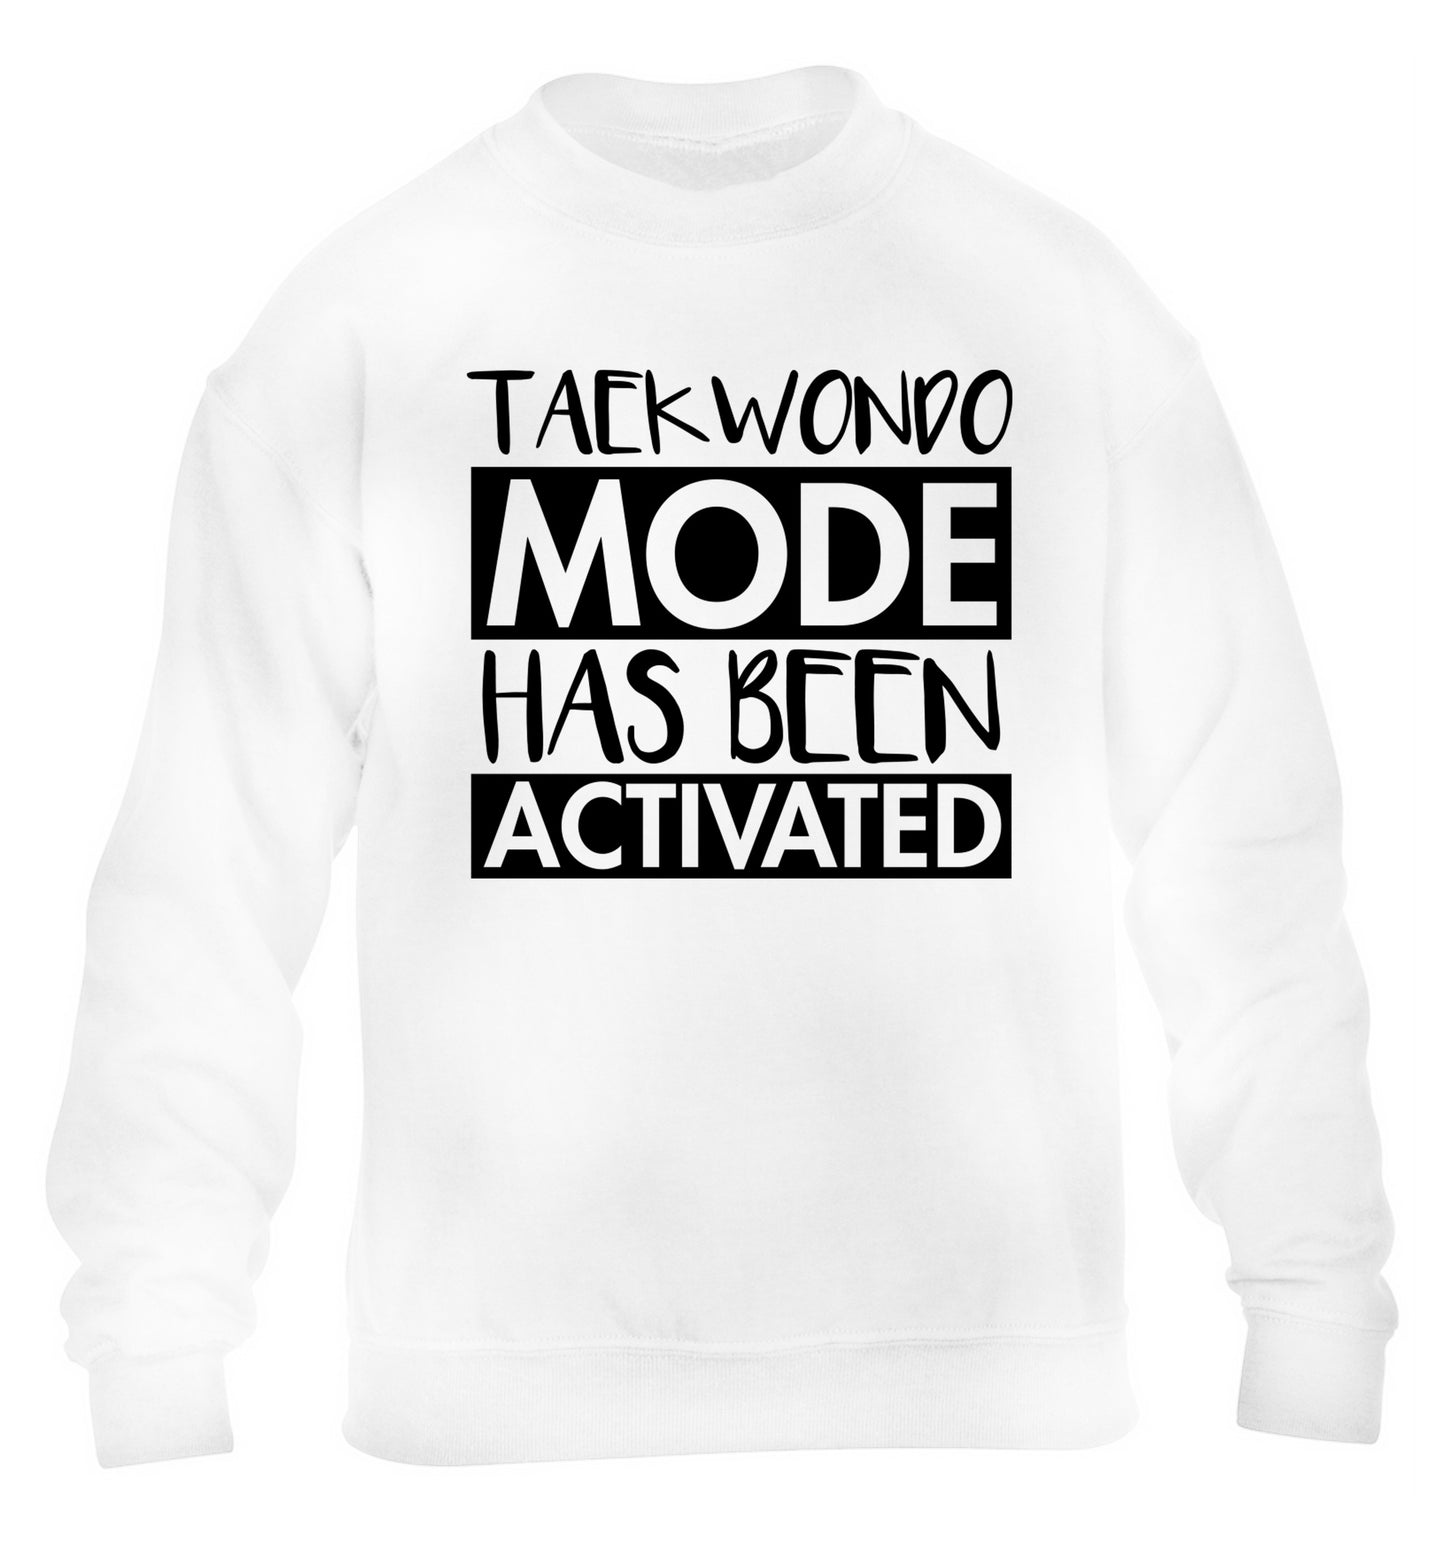 Taekwondo mode activated children's white sweater 12-14 Years